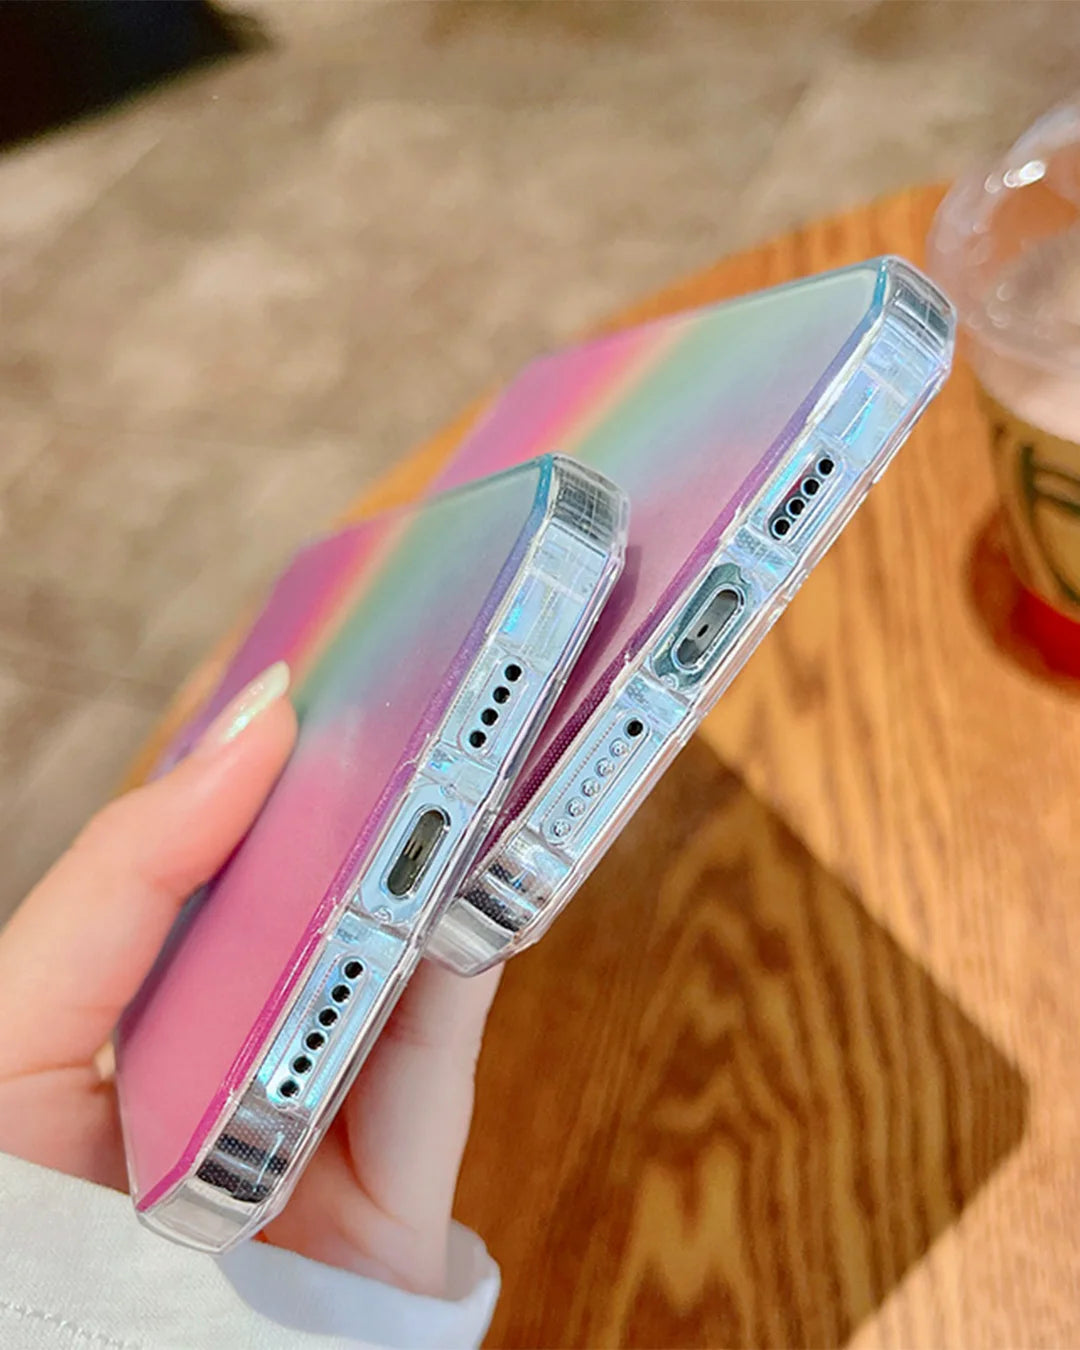 capa-de-celular-iphone-arco-iris-colorido-uebecom-4